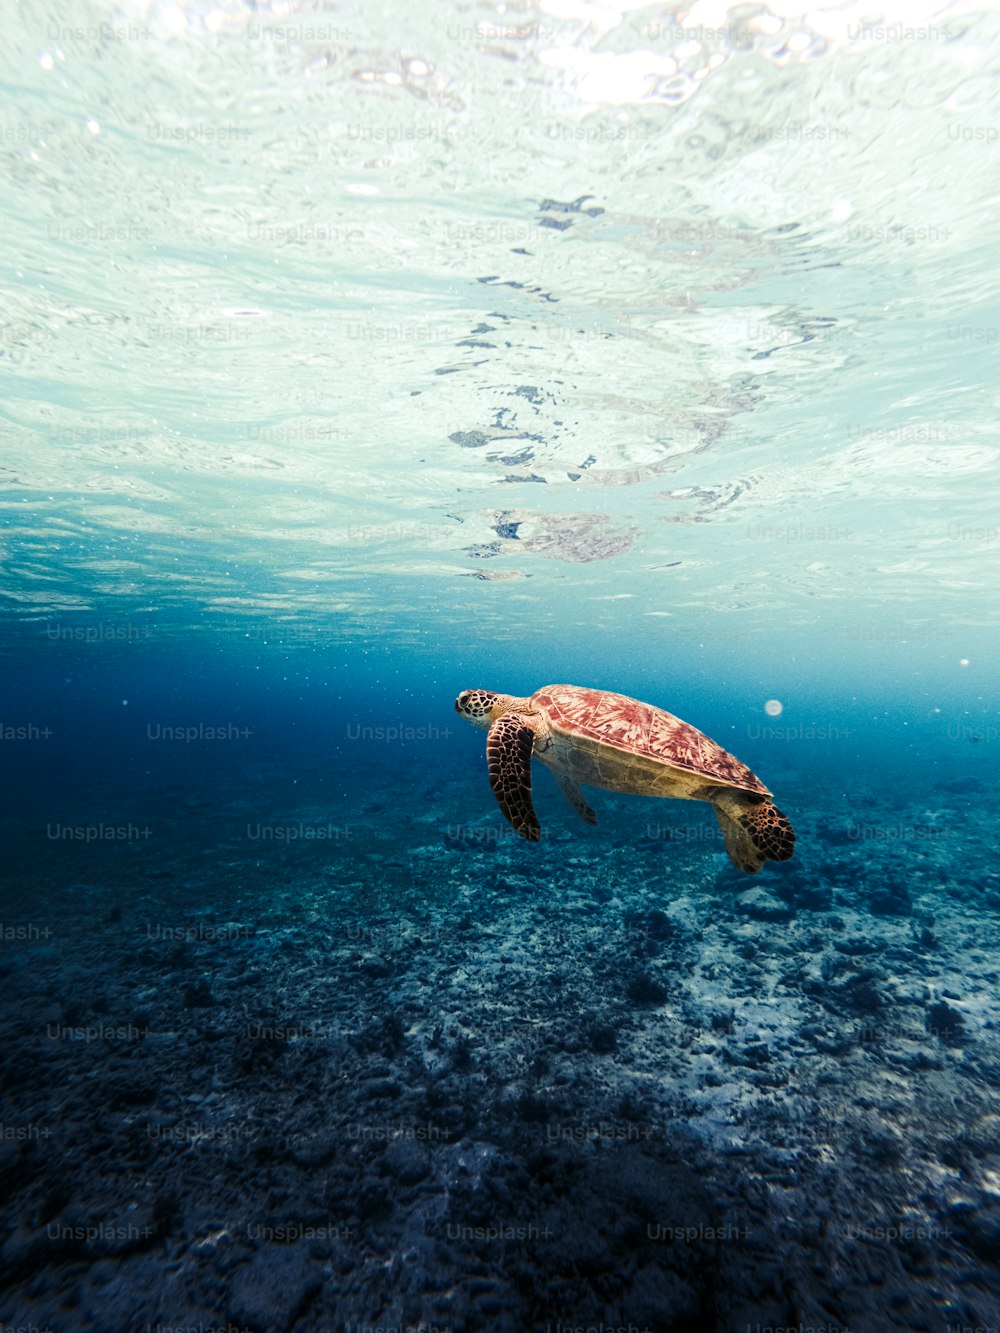 Más de 750 imágenes de animales marinos | Descargar imágenes gratis en  Unsplash